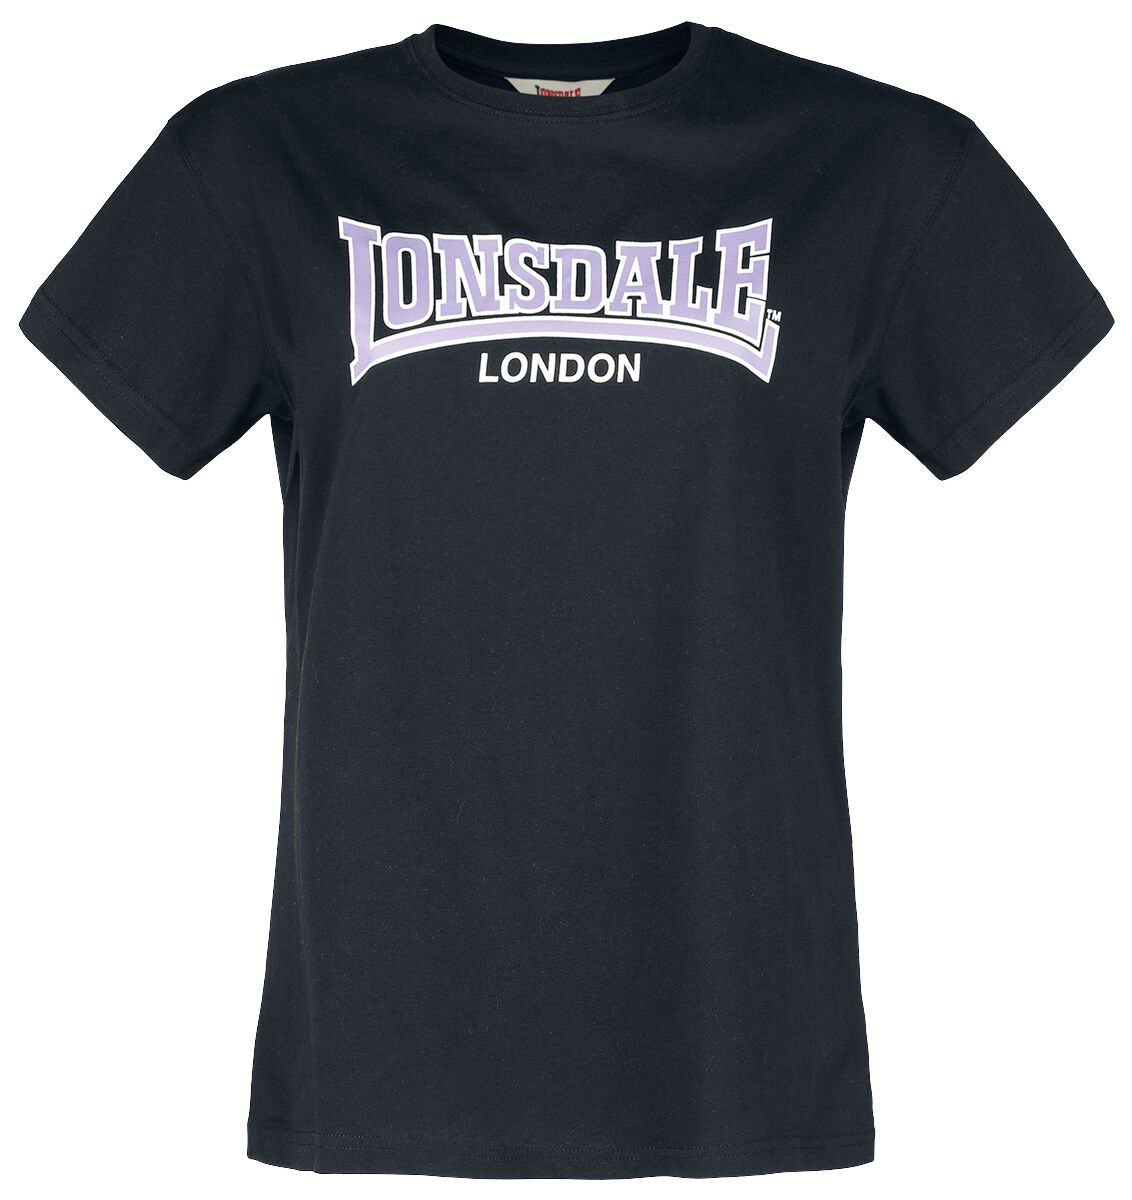 Lonsdale London OUSDALE T-Shirt black